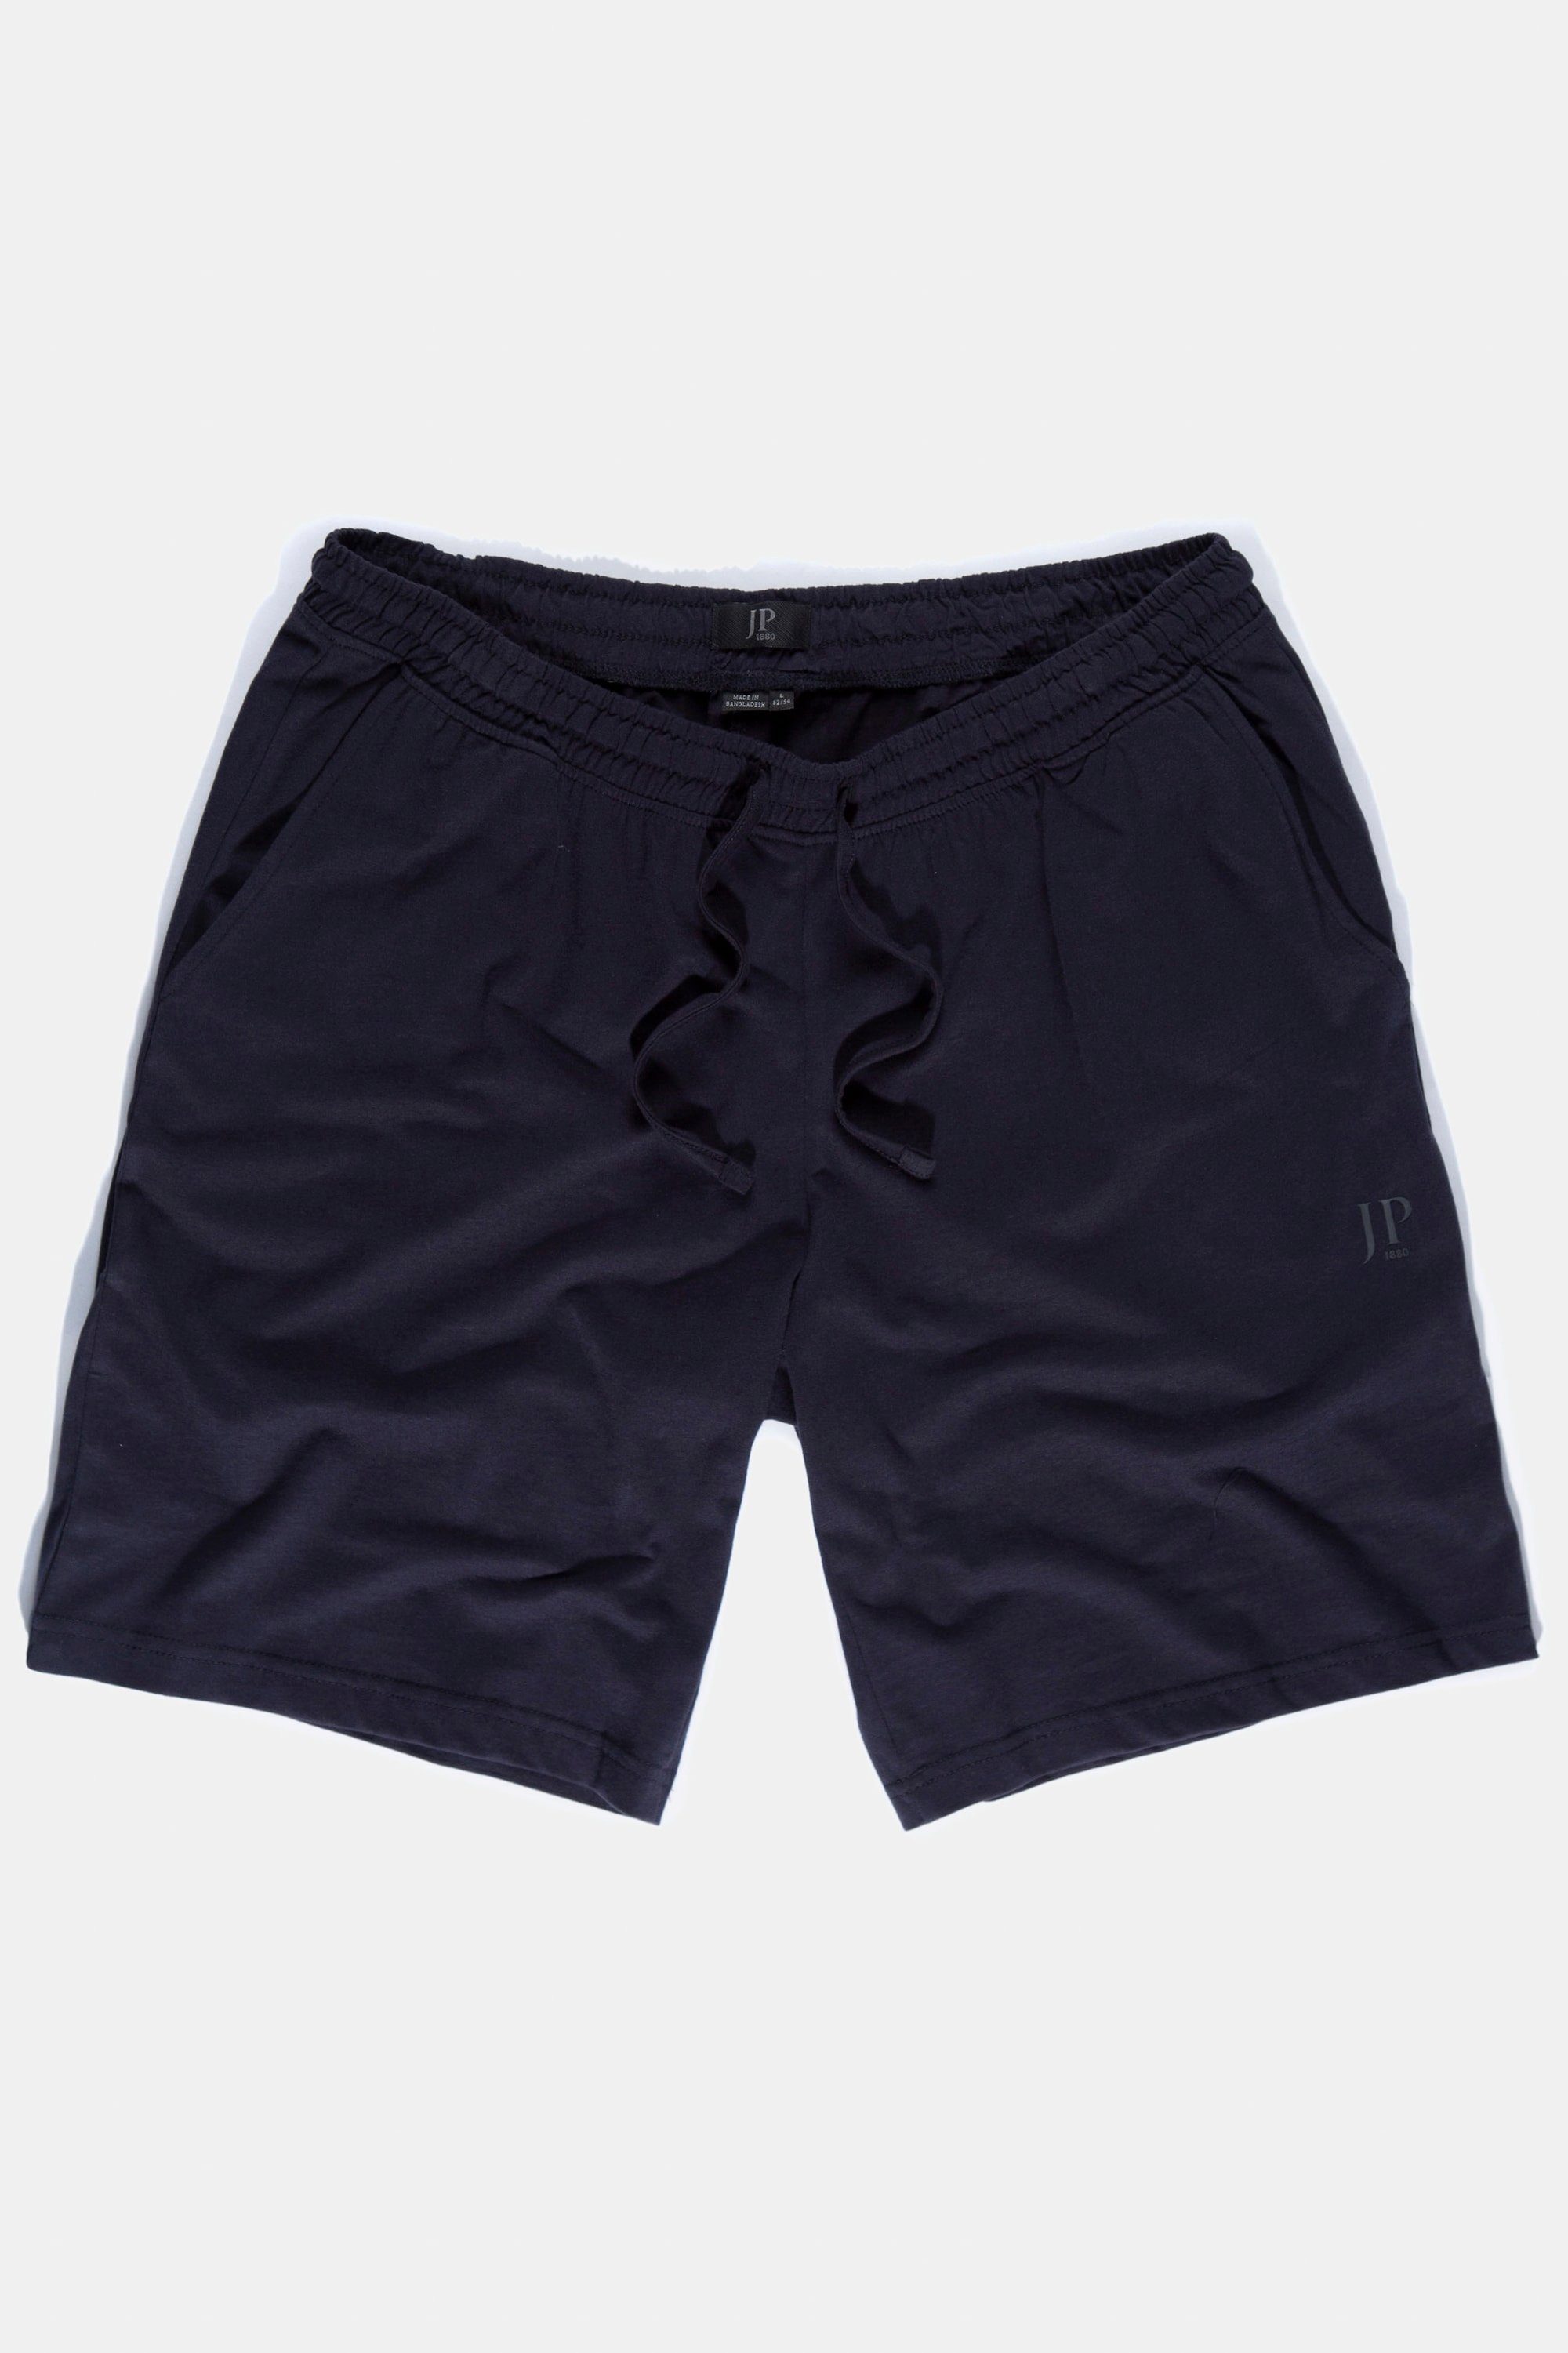 marine dunkel Elastikbund JP1880 Schlafanzug Homewear Shorts Schlafanzug Hose